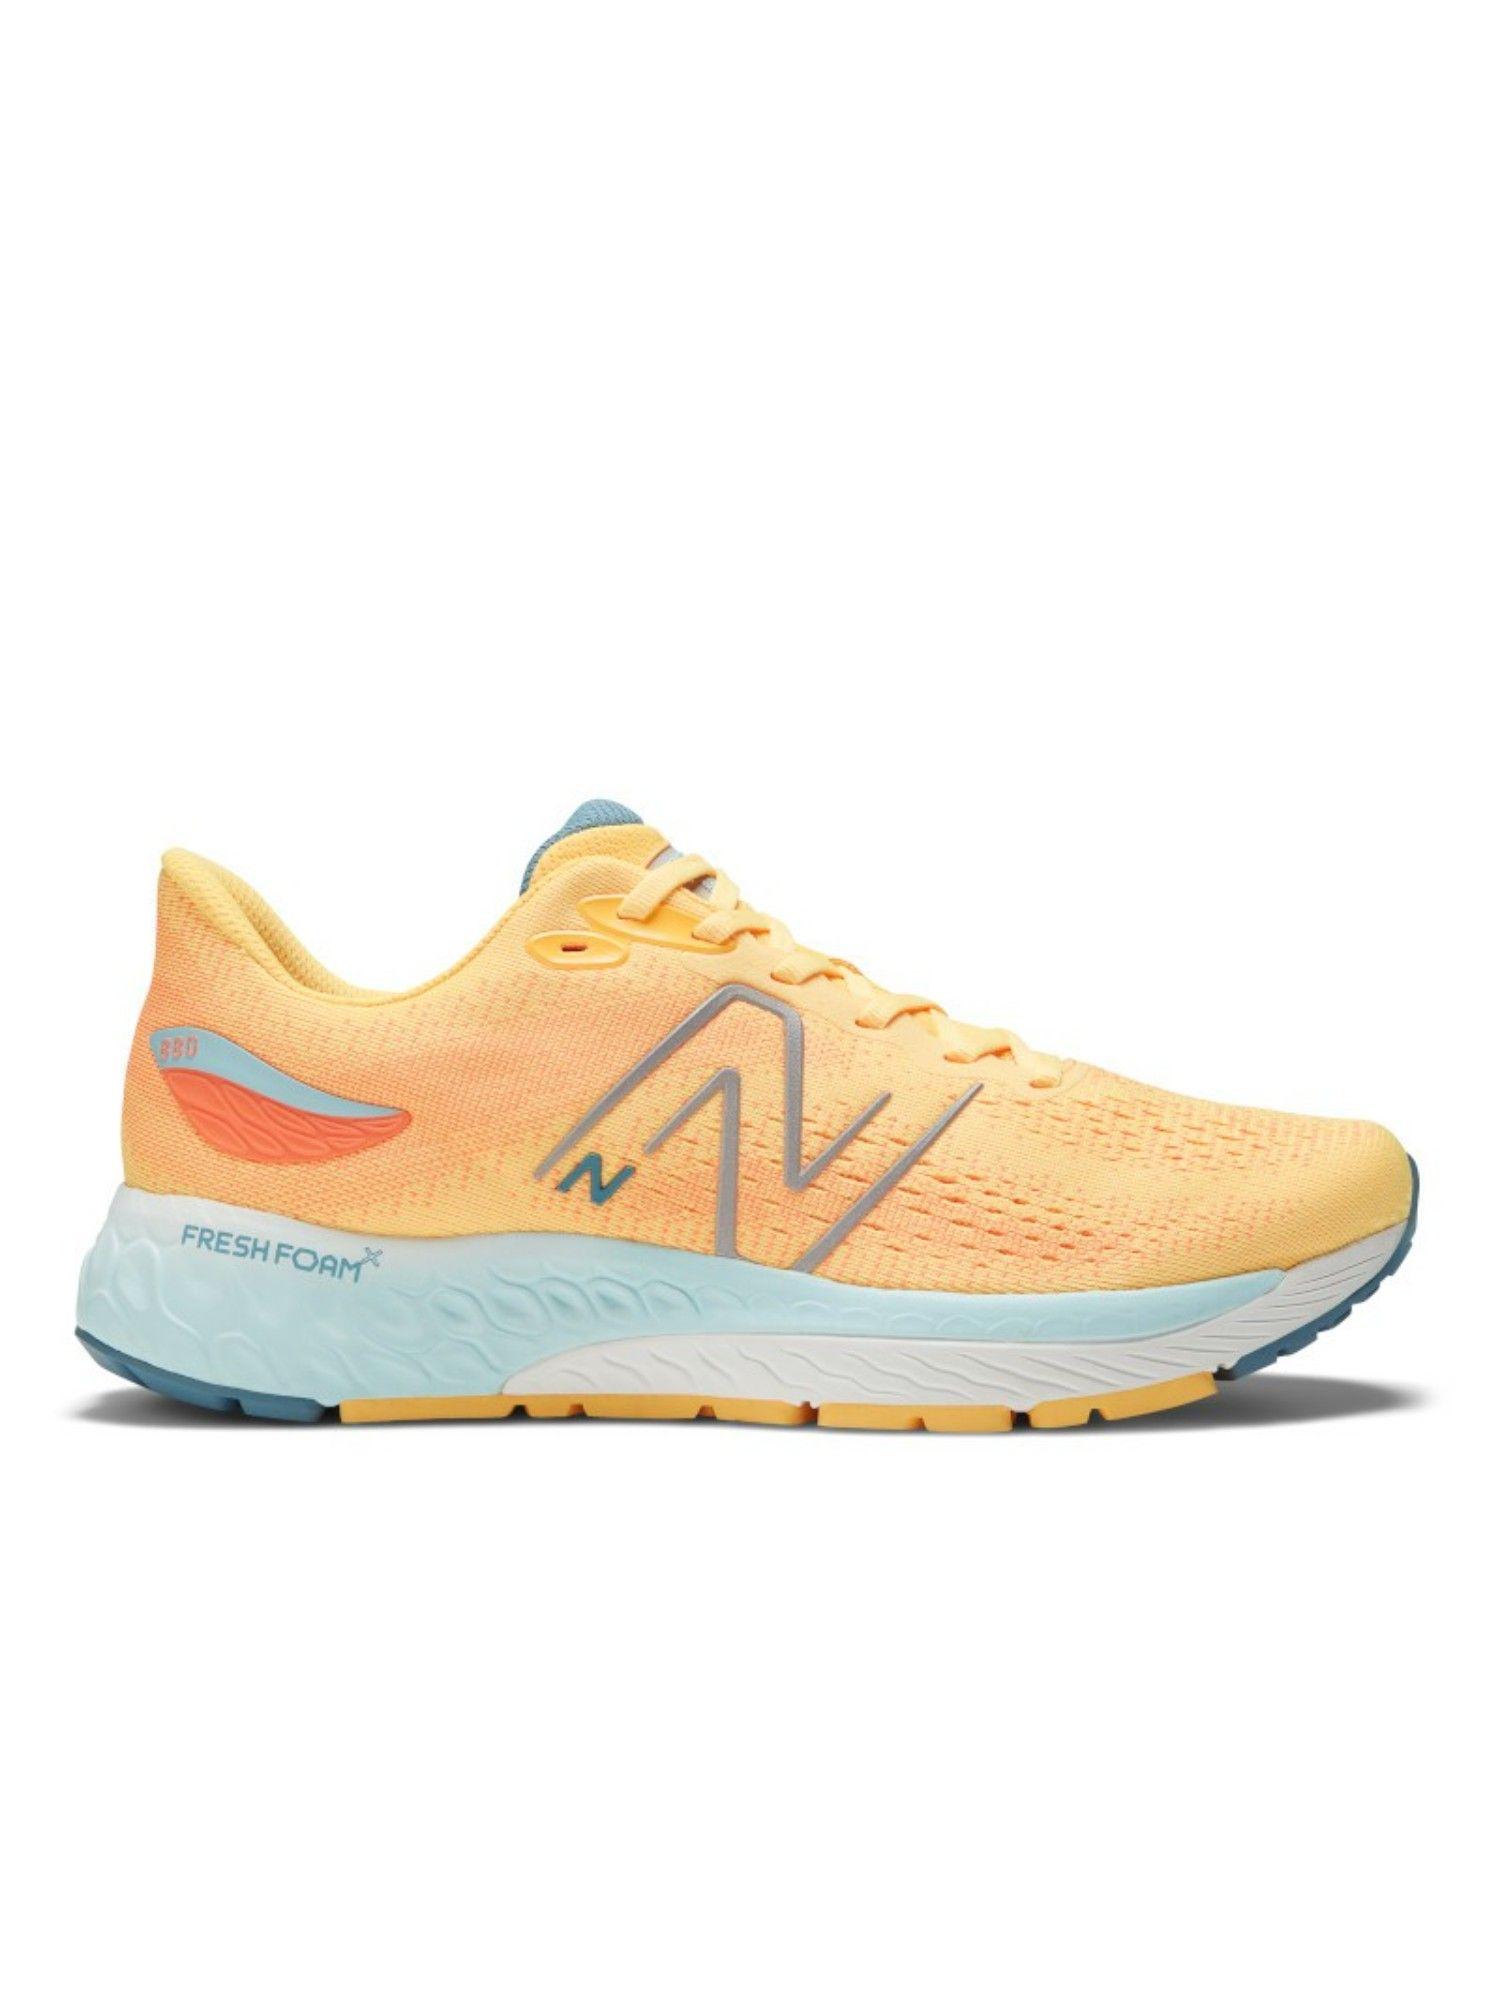 men 880 orange running shoe